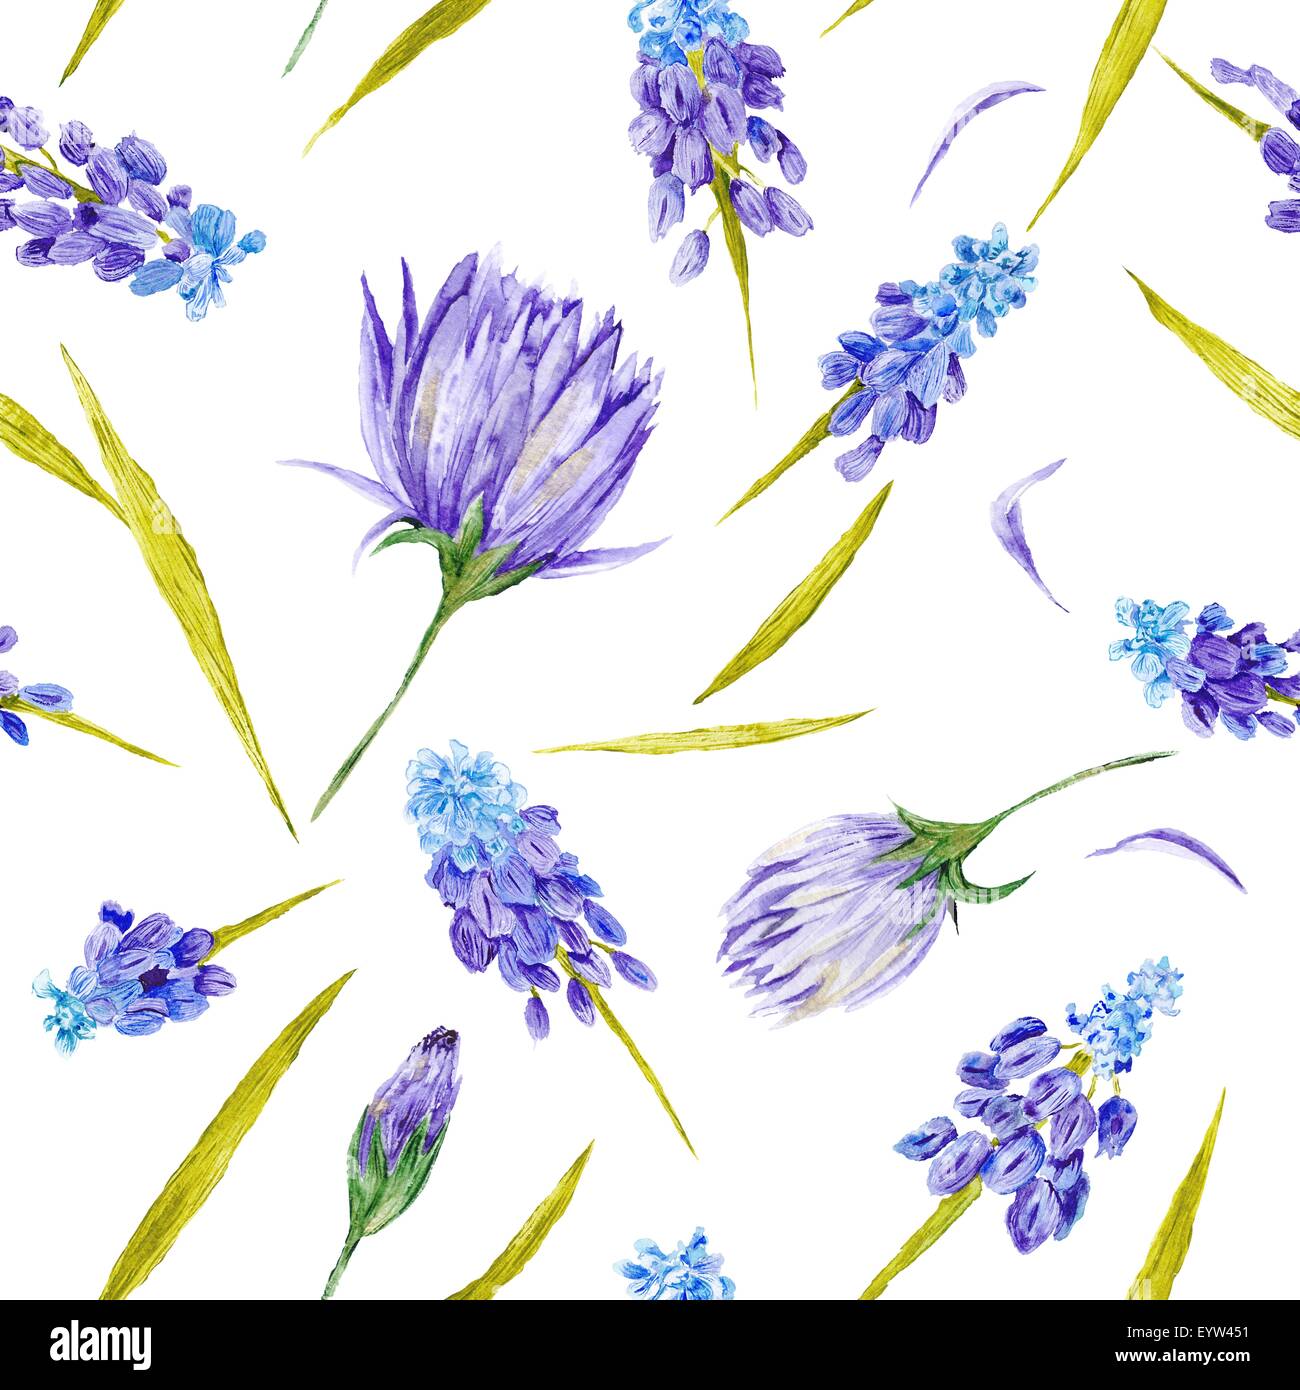 Seamless dipinte a mano illustrazione ad acquerello con fiori viola e foglie verdi su sfondo bianco Foto Stock